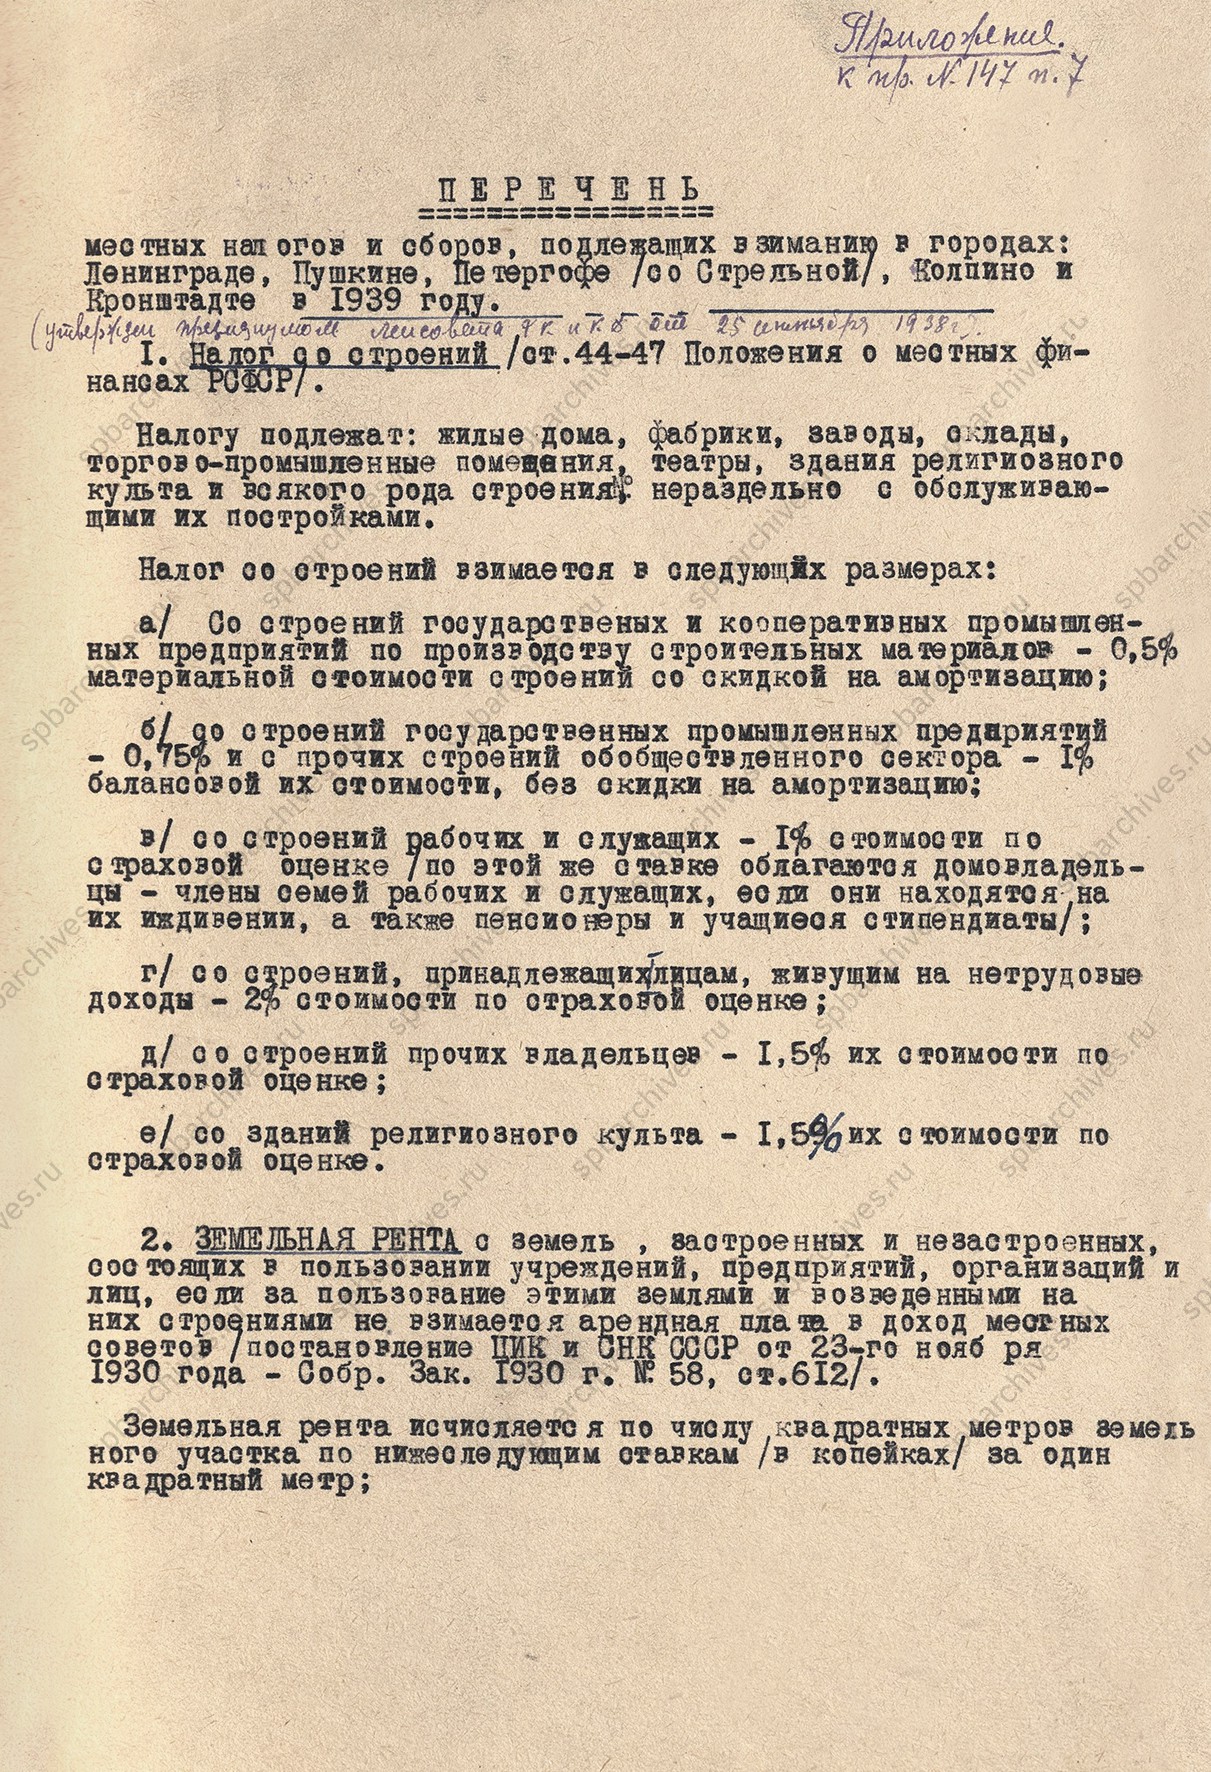 Перечень местных налогов и сборов, подлежащих взиманию в Ленинграде и пригородах в 1939 г.<br />
Не позднее 25 сентября 1938 г.<br />
<em>ЦГА СПб. Ф.7384. Оп.18. Д.776. Л.93.</em>